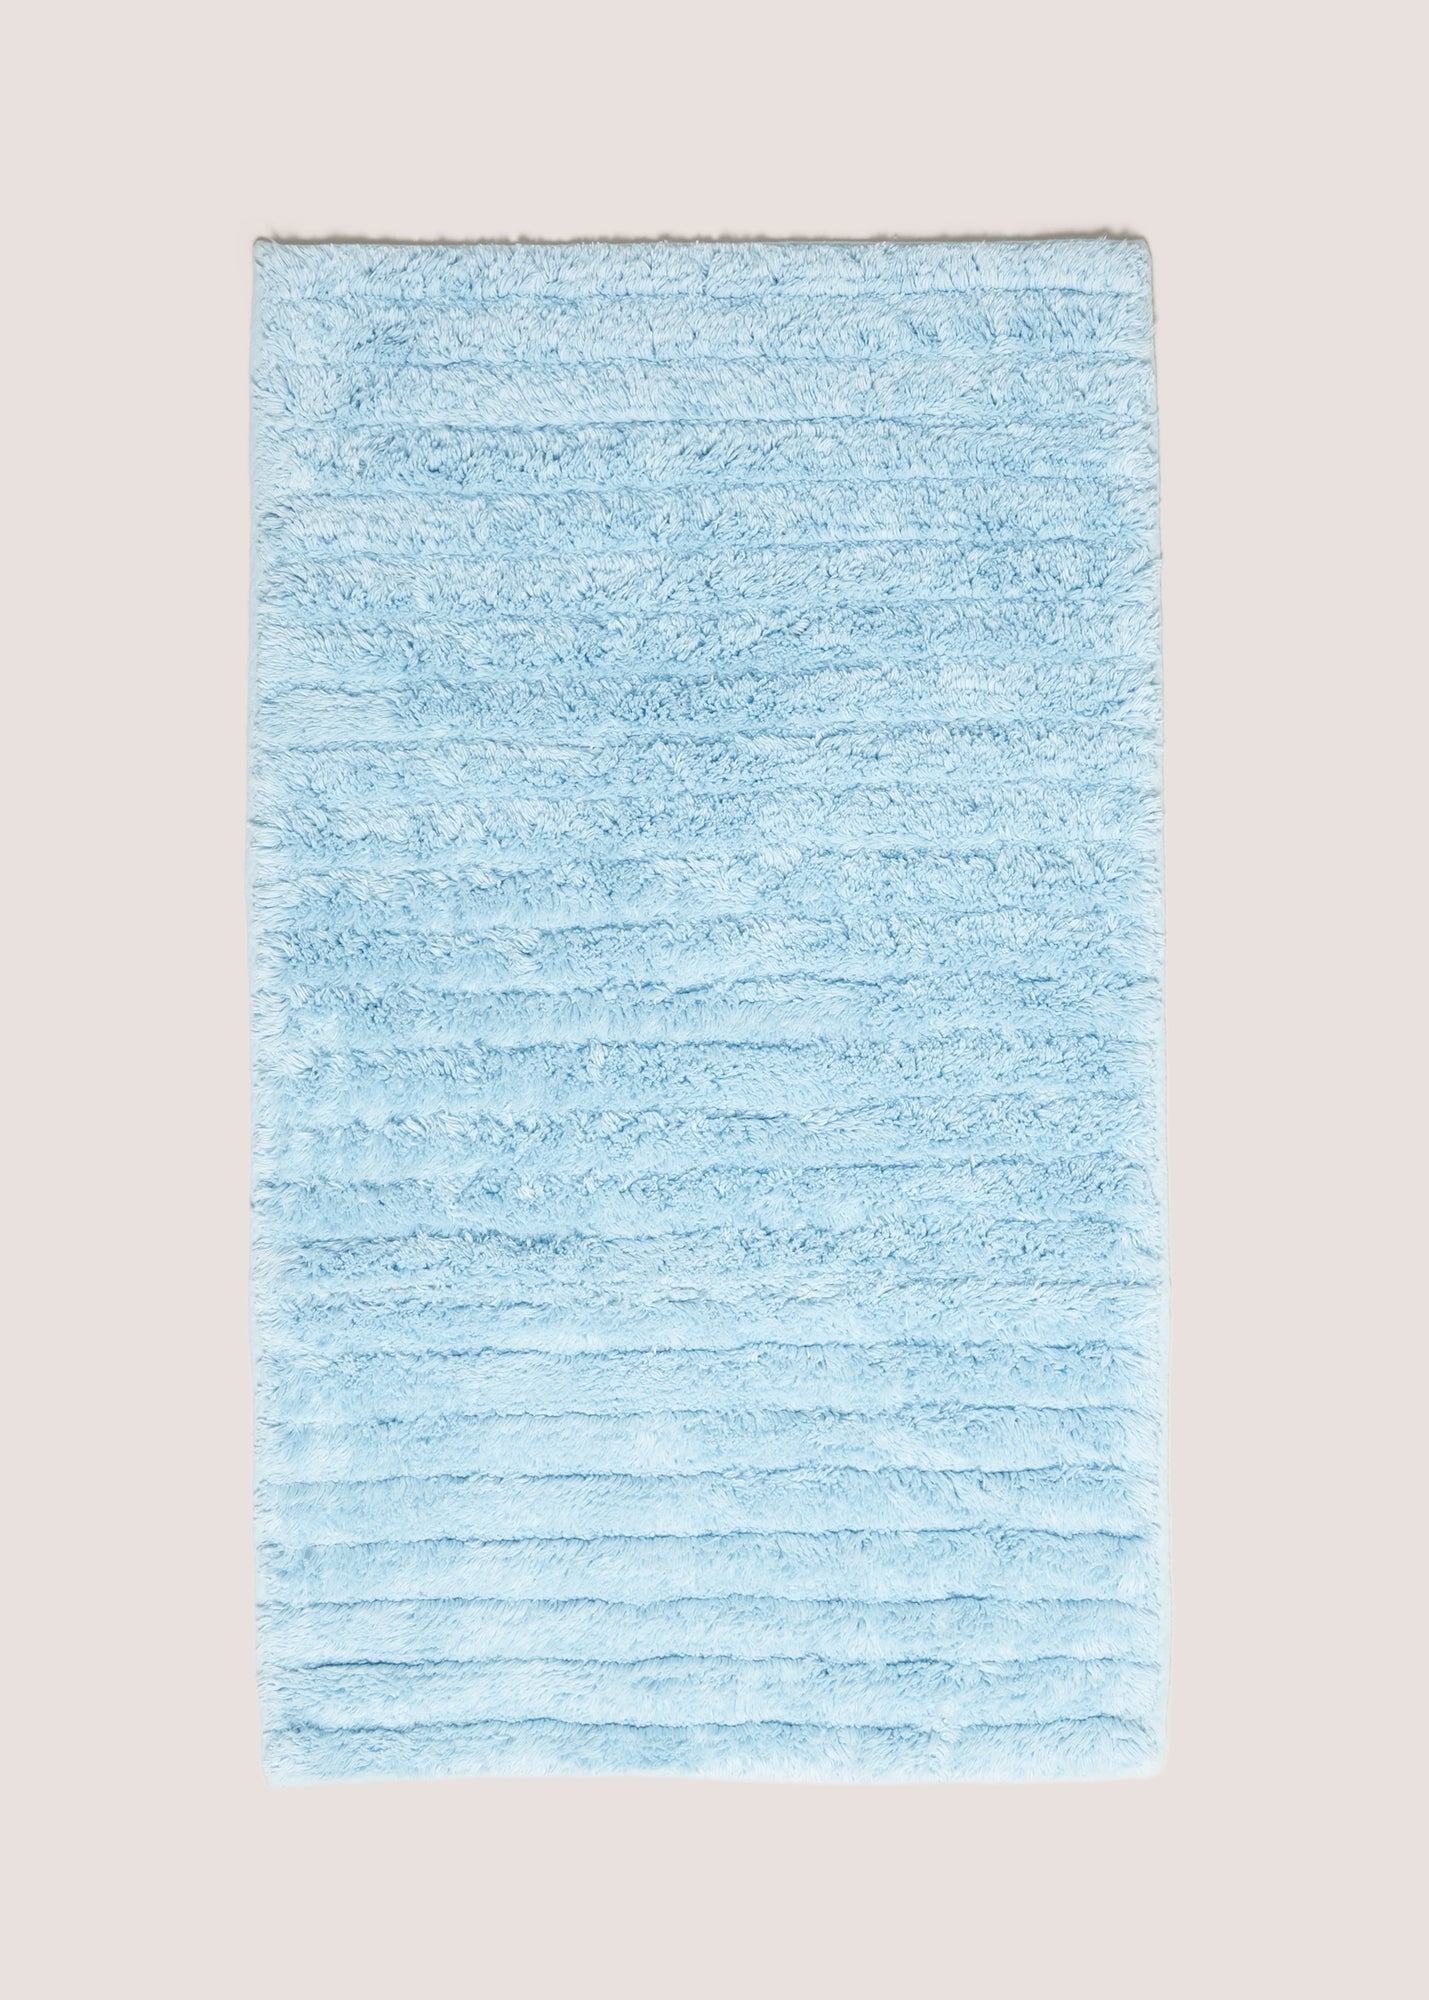 Blue Ribbed Cotton Bath Mat (40x25cm) M814851